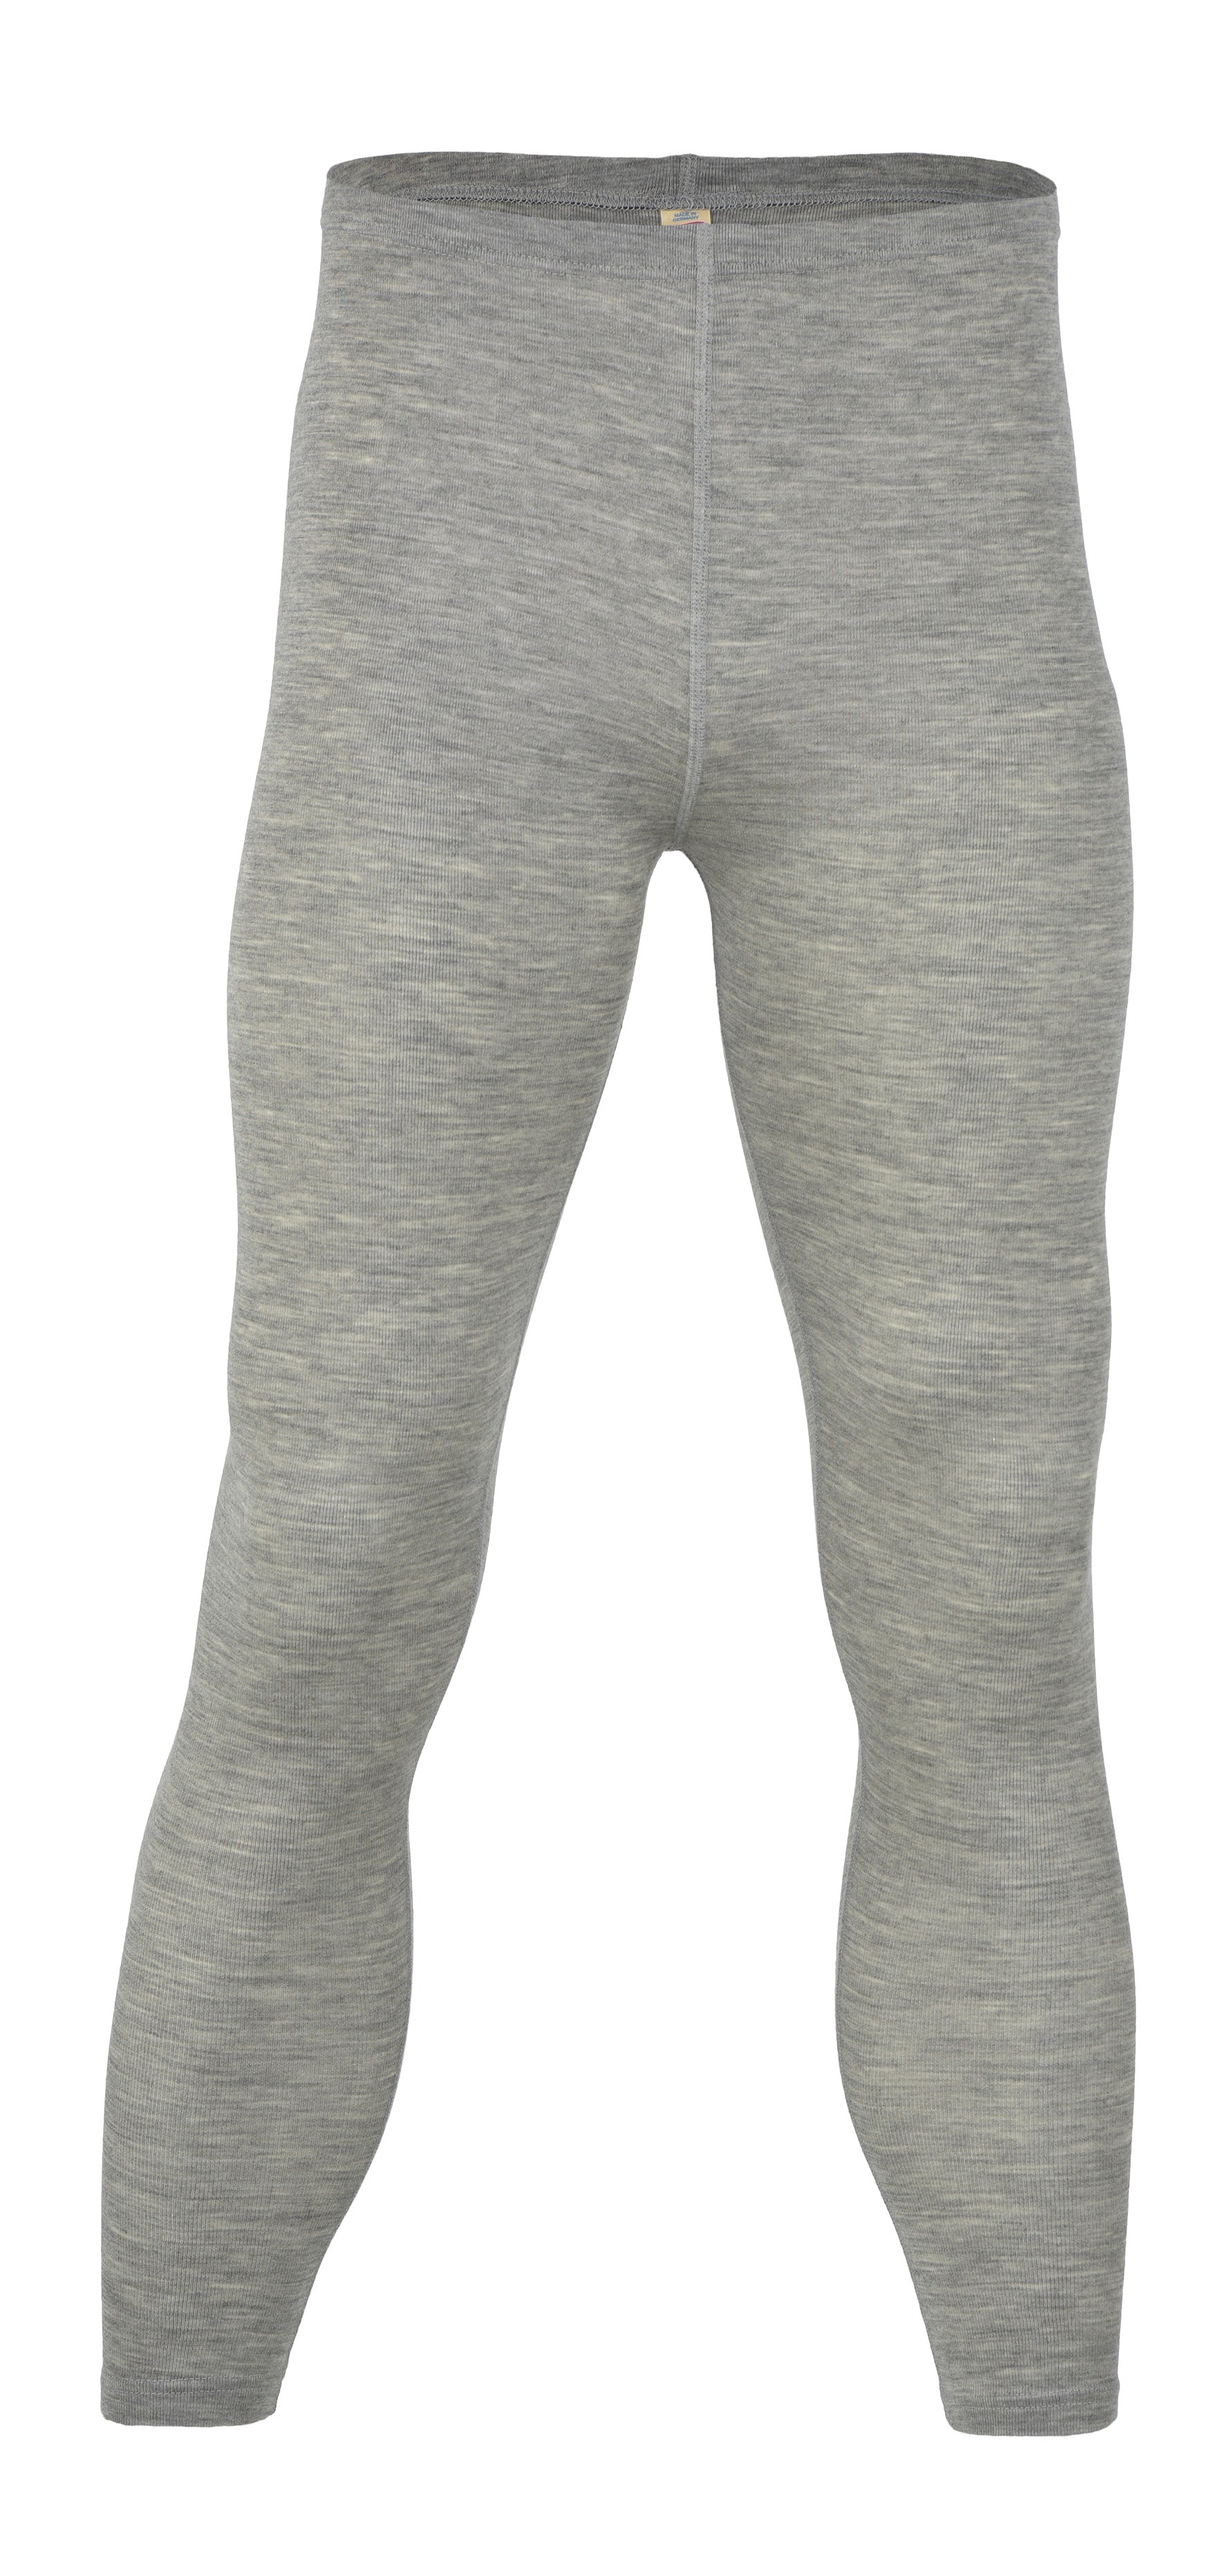 Engel Merino Wool Adult -Leggings, Underwear, Long johns